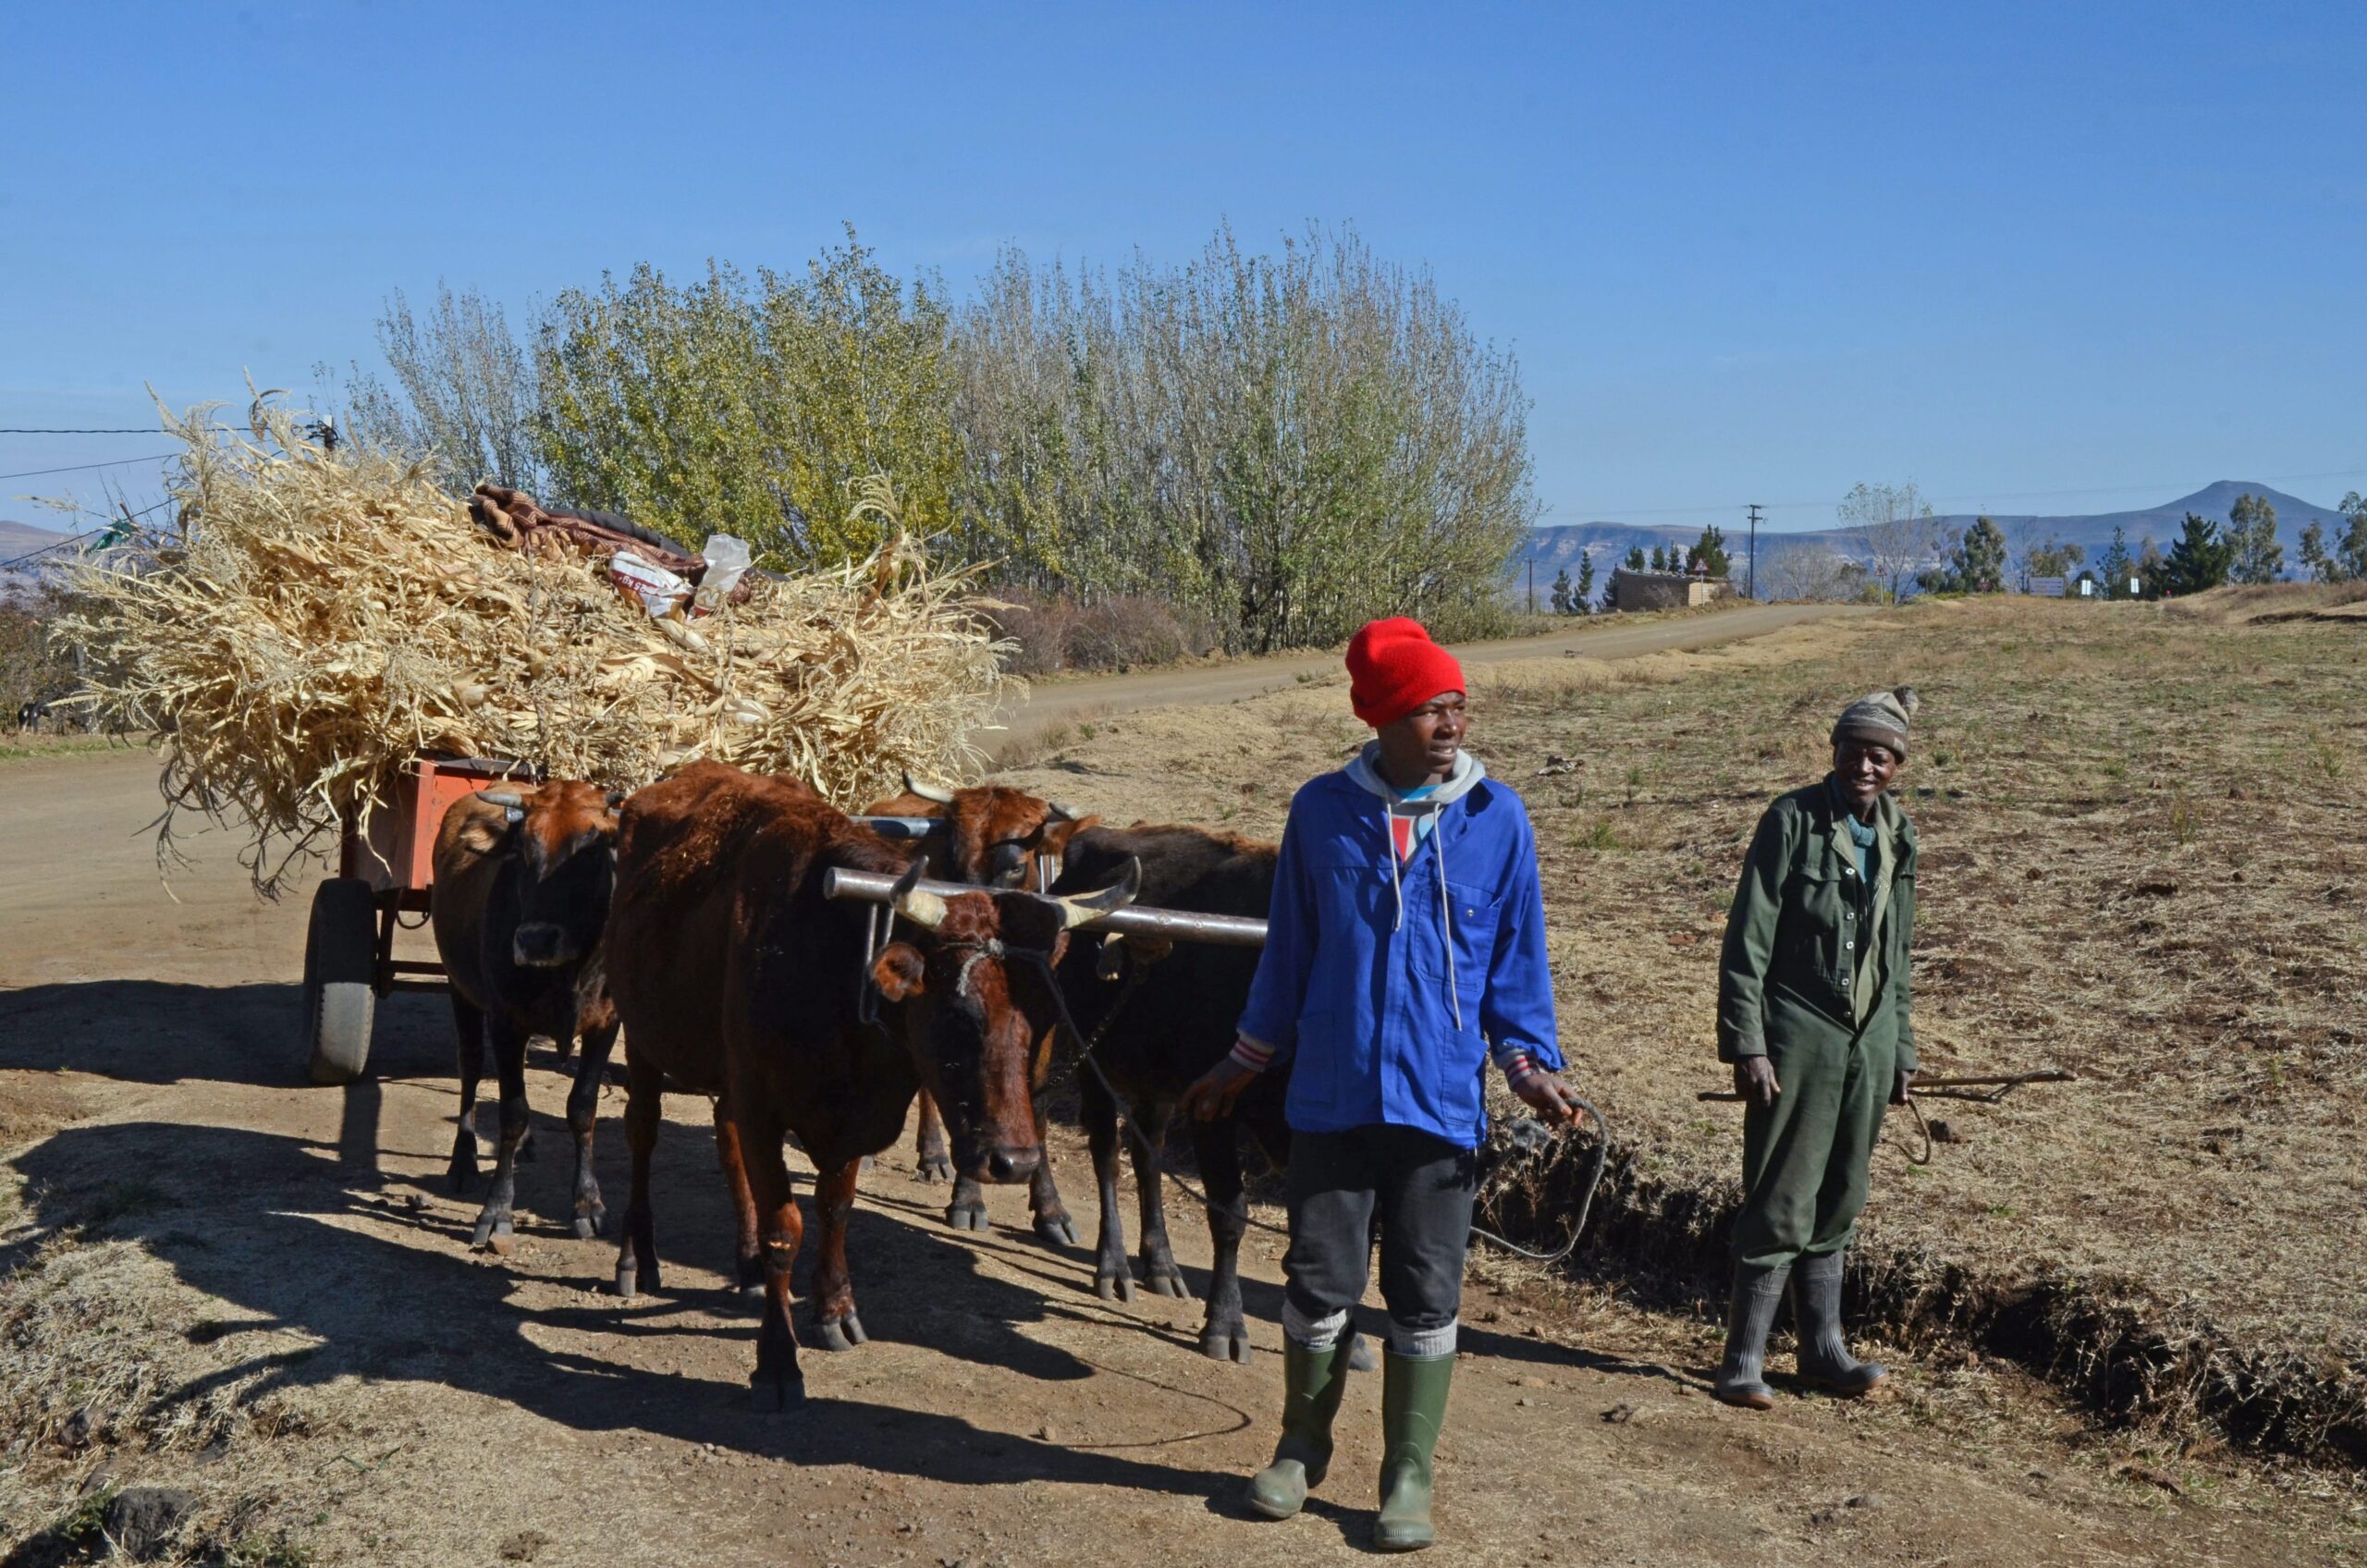 Matelile, Lesotho